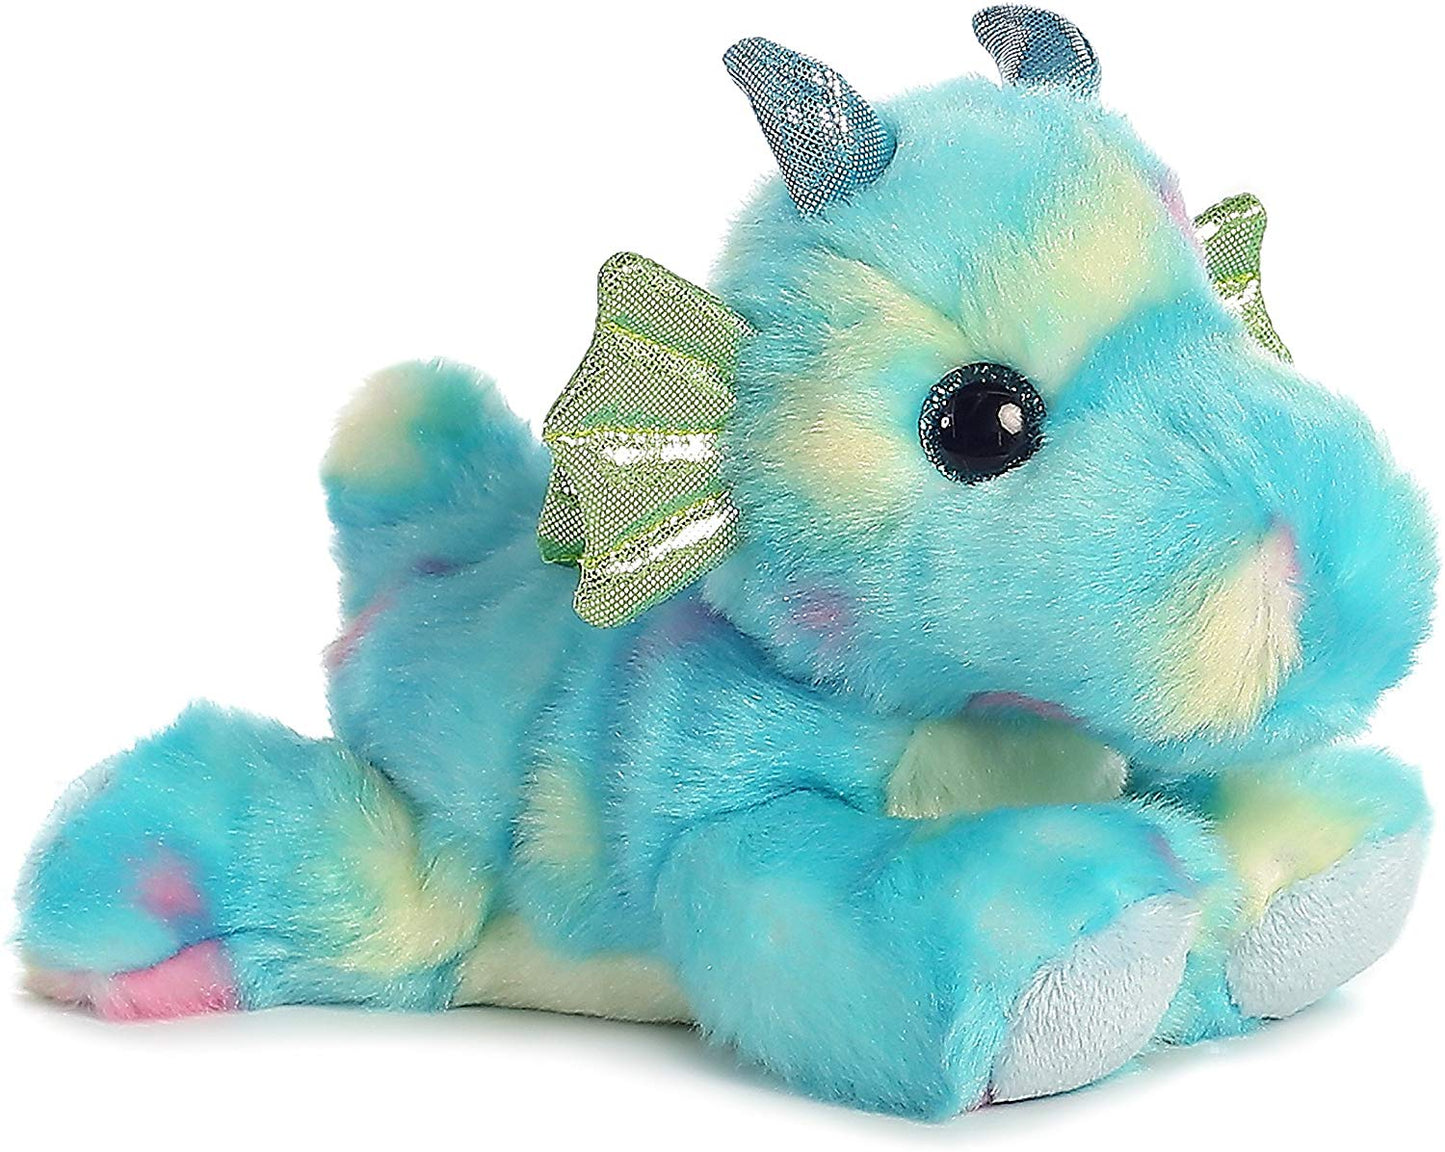 dragon, Aurora, shimmery, confetti, bright fancies, plush, toy